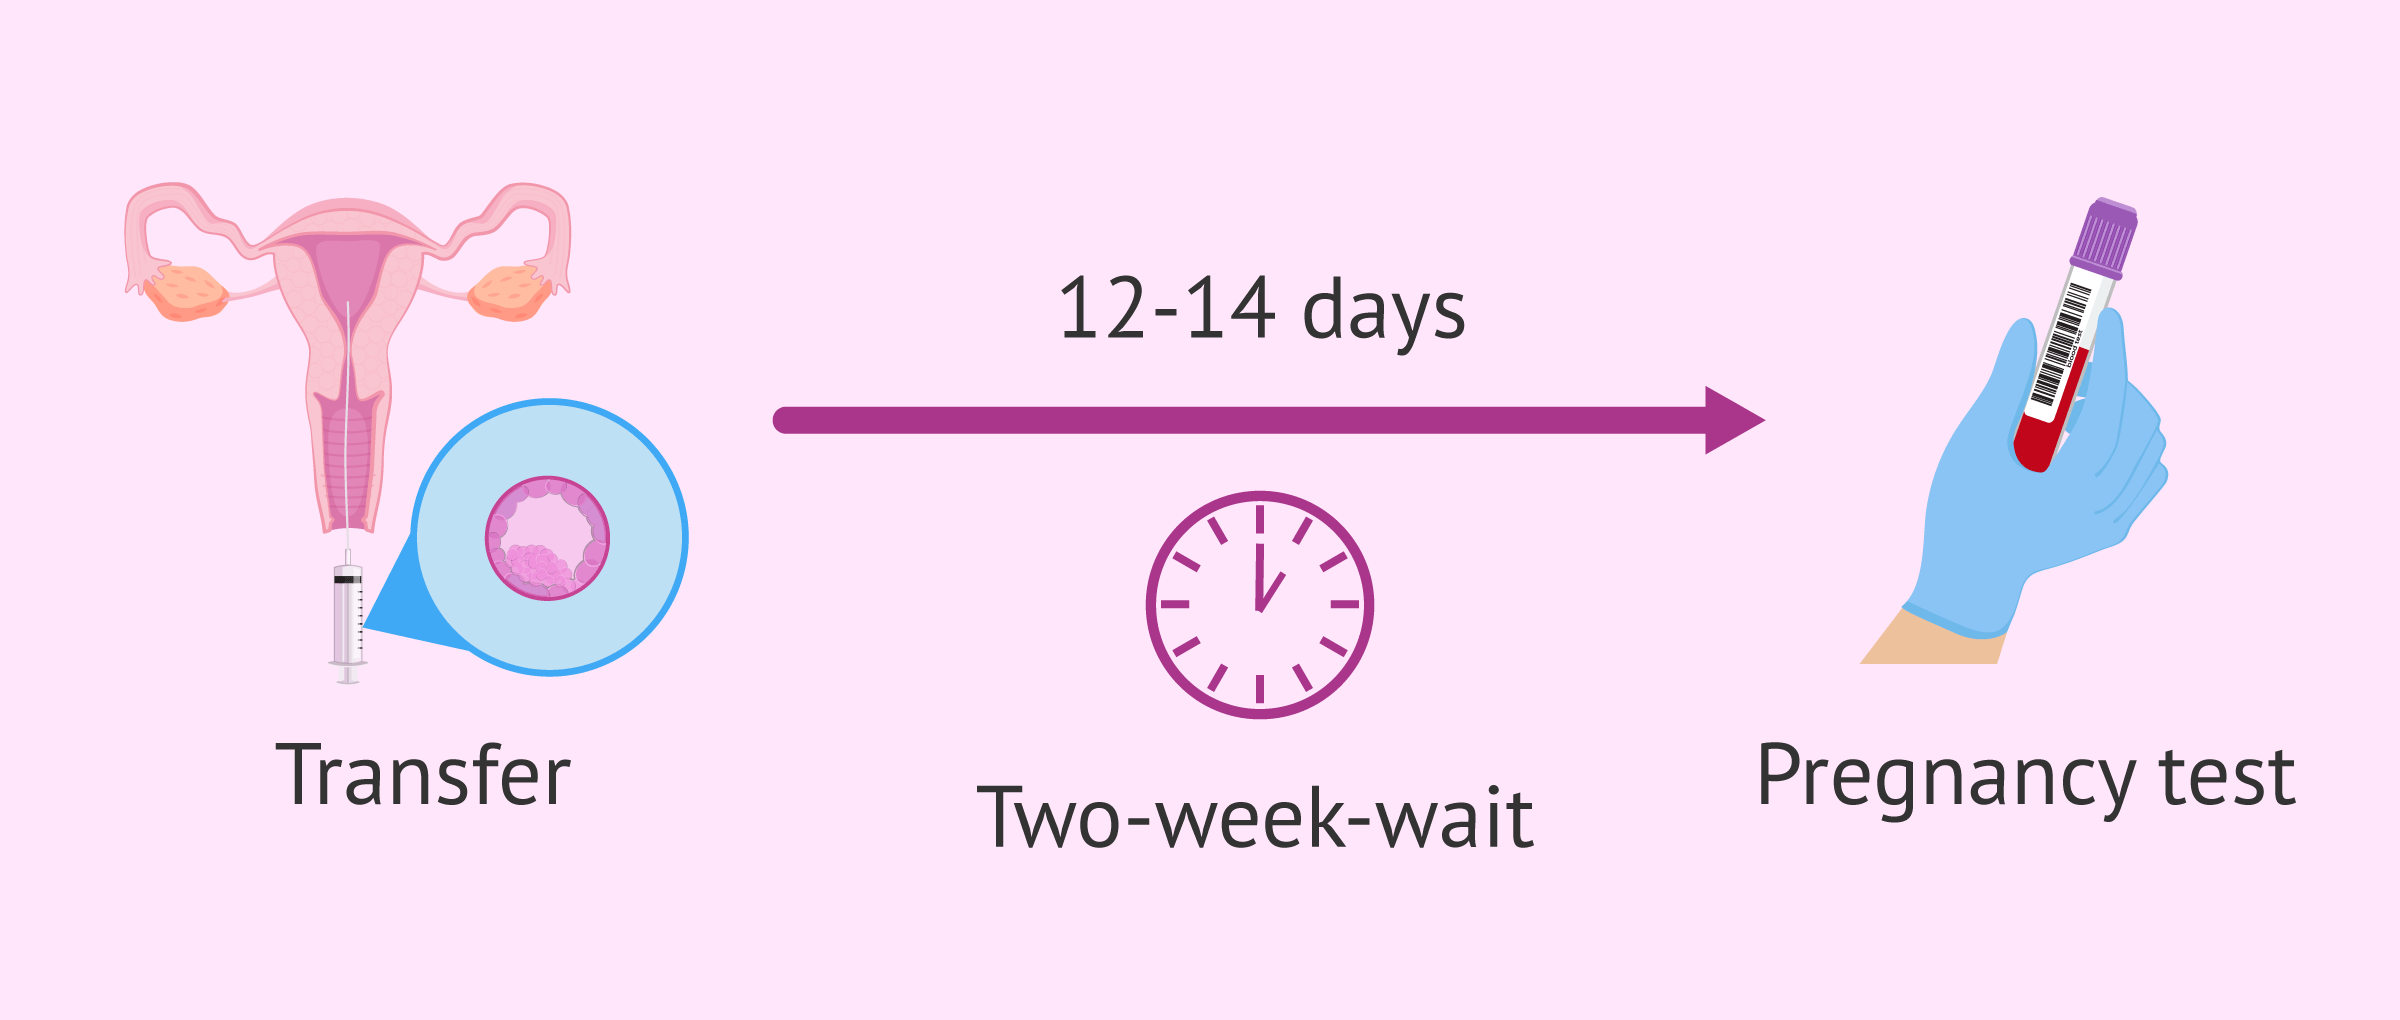 Two-week wait